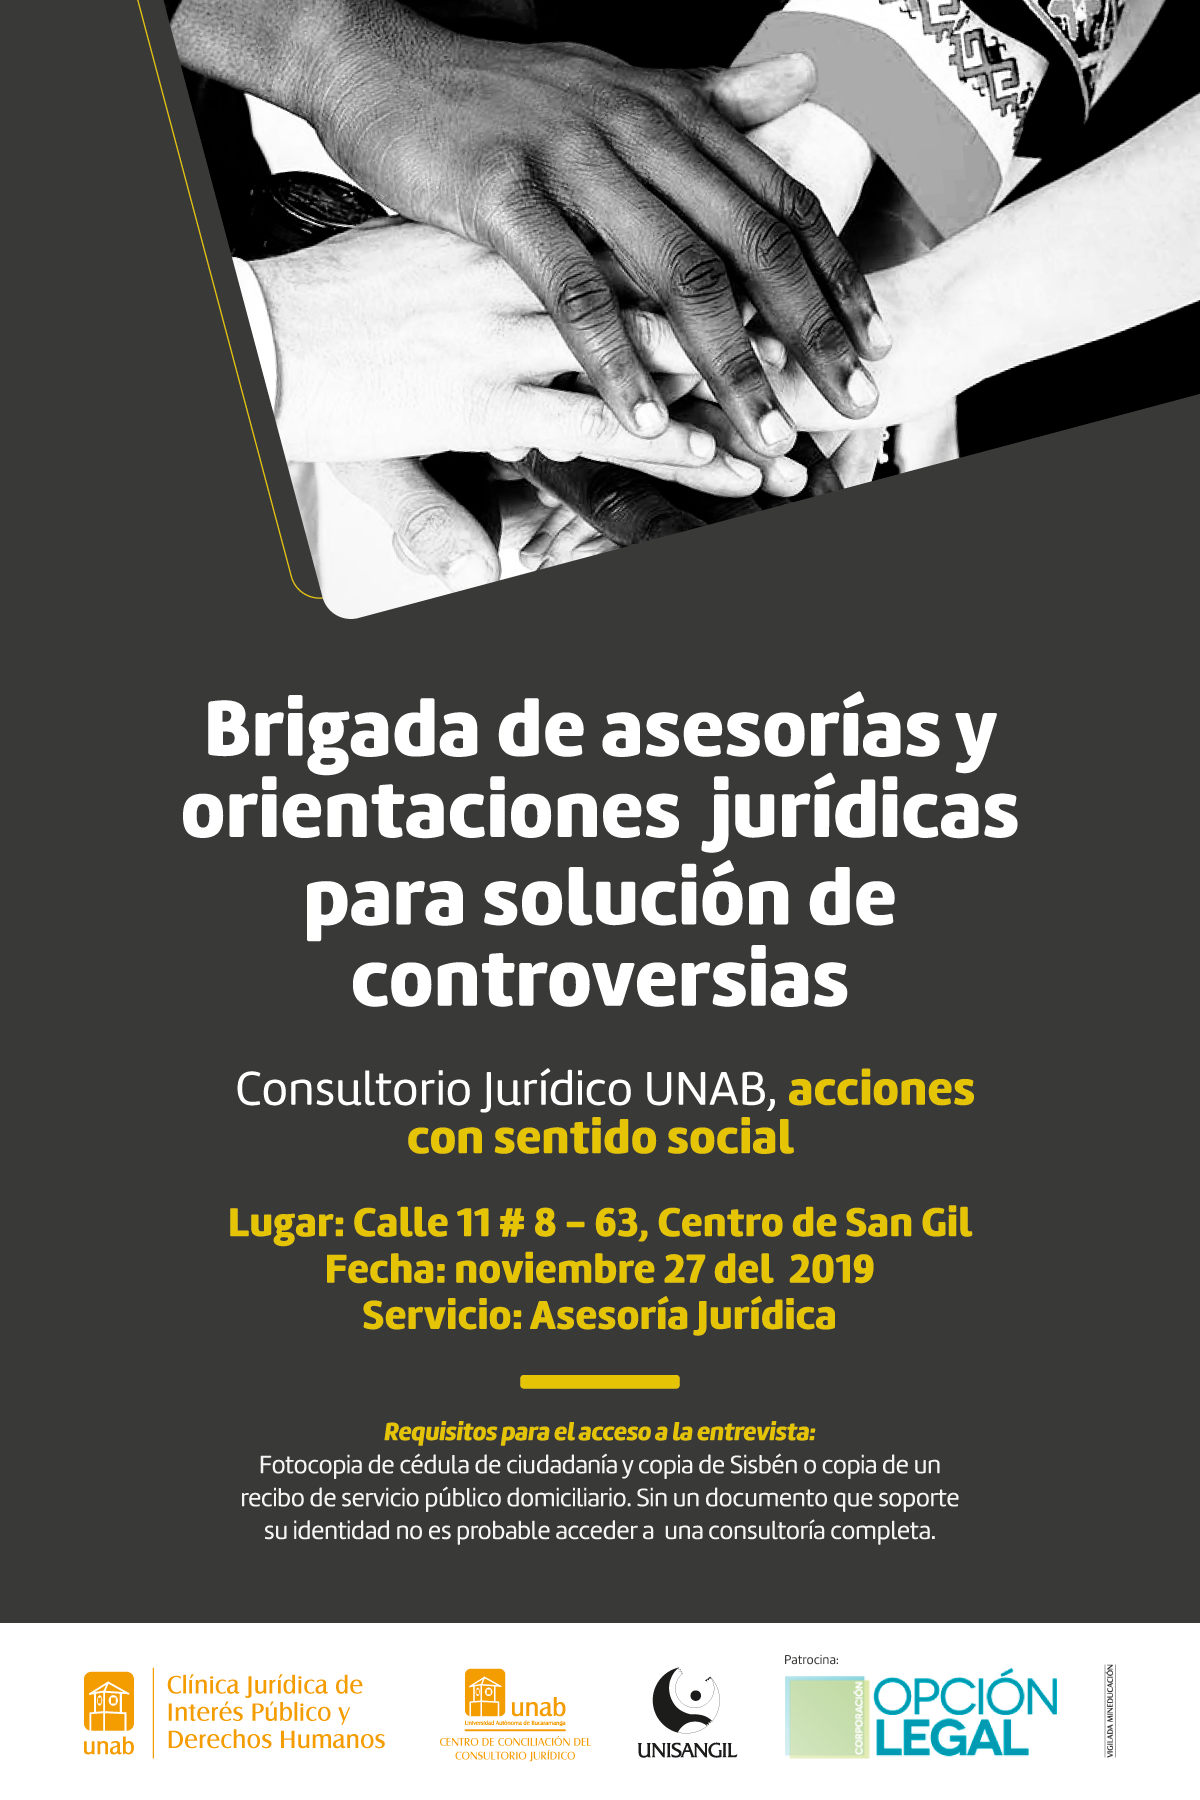 Consultorio Jurídico UNAB brindará asesoría jurídica en San Gil